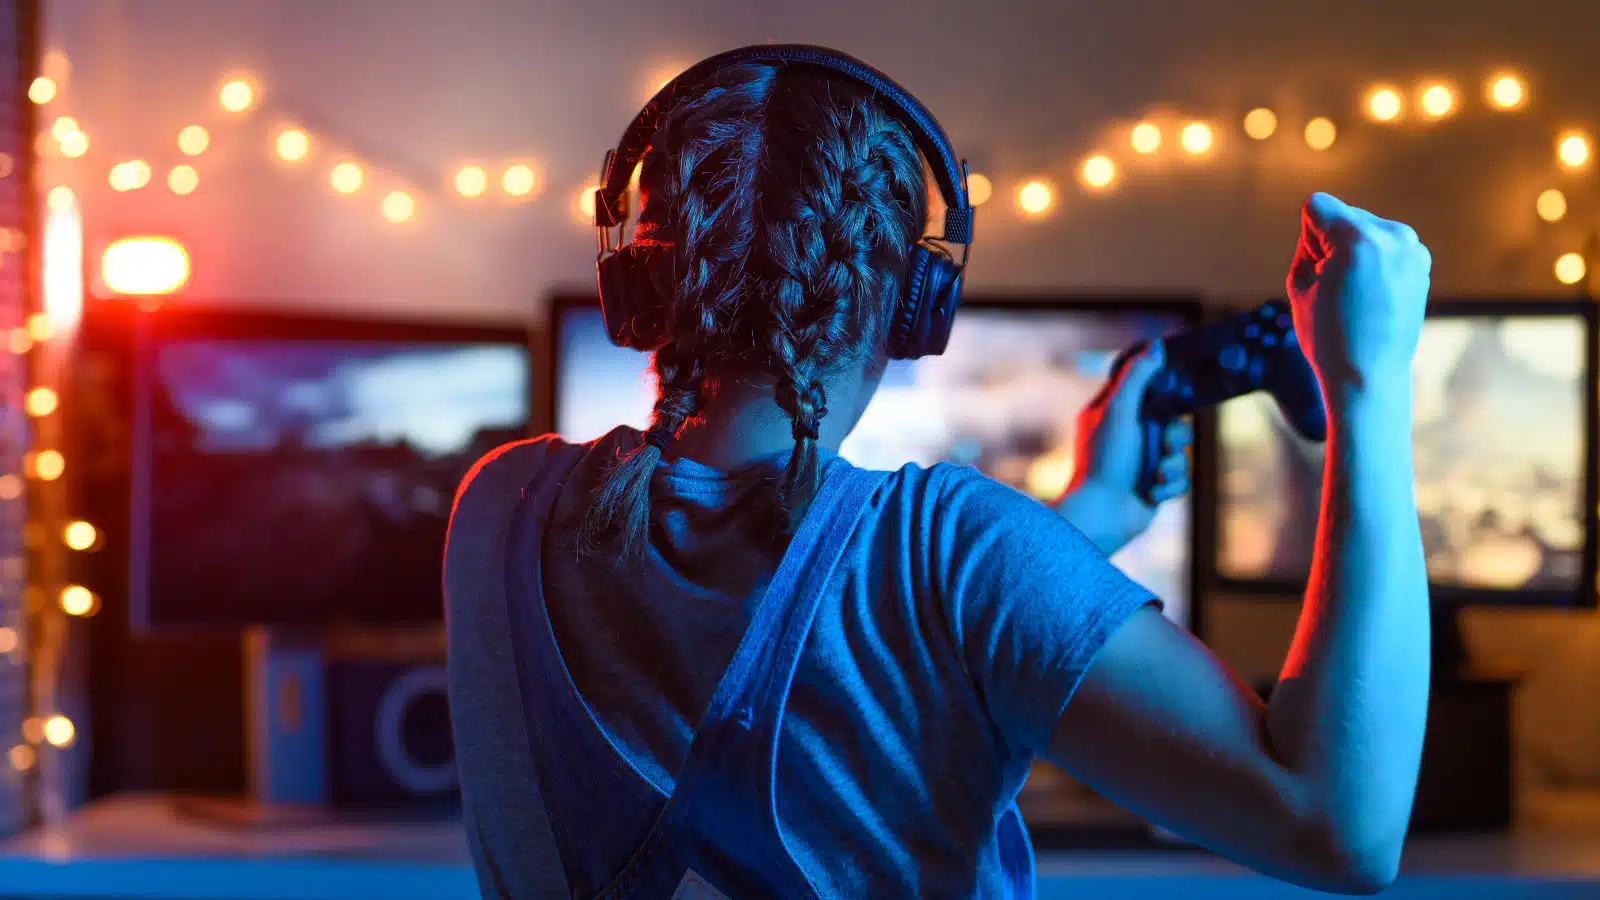 eSport e internet gaming disorder: qual è il confine tra gioco e dipendenza?